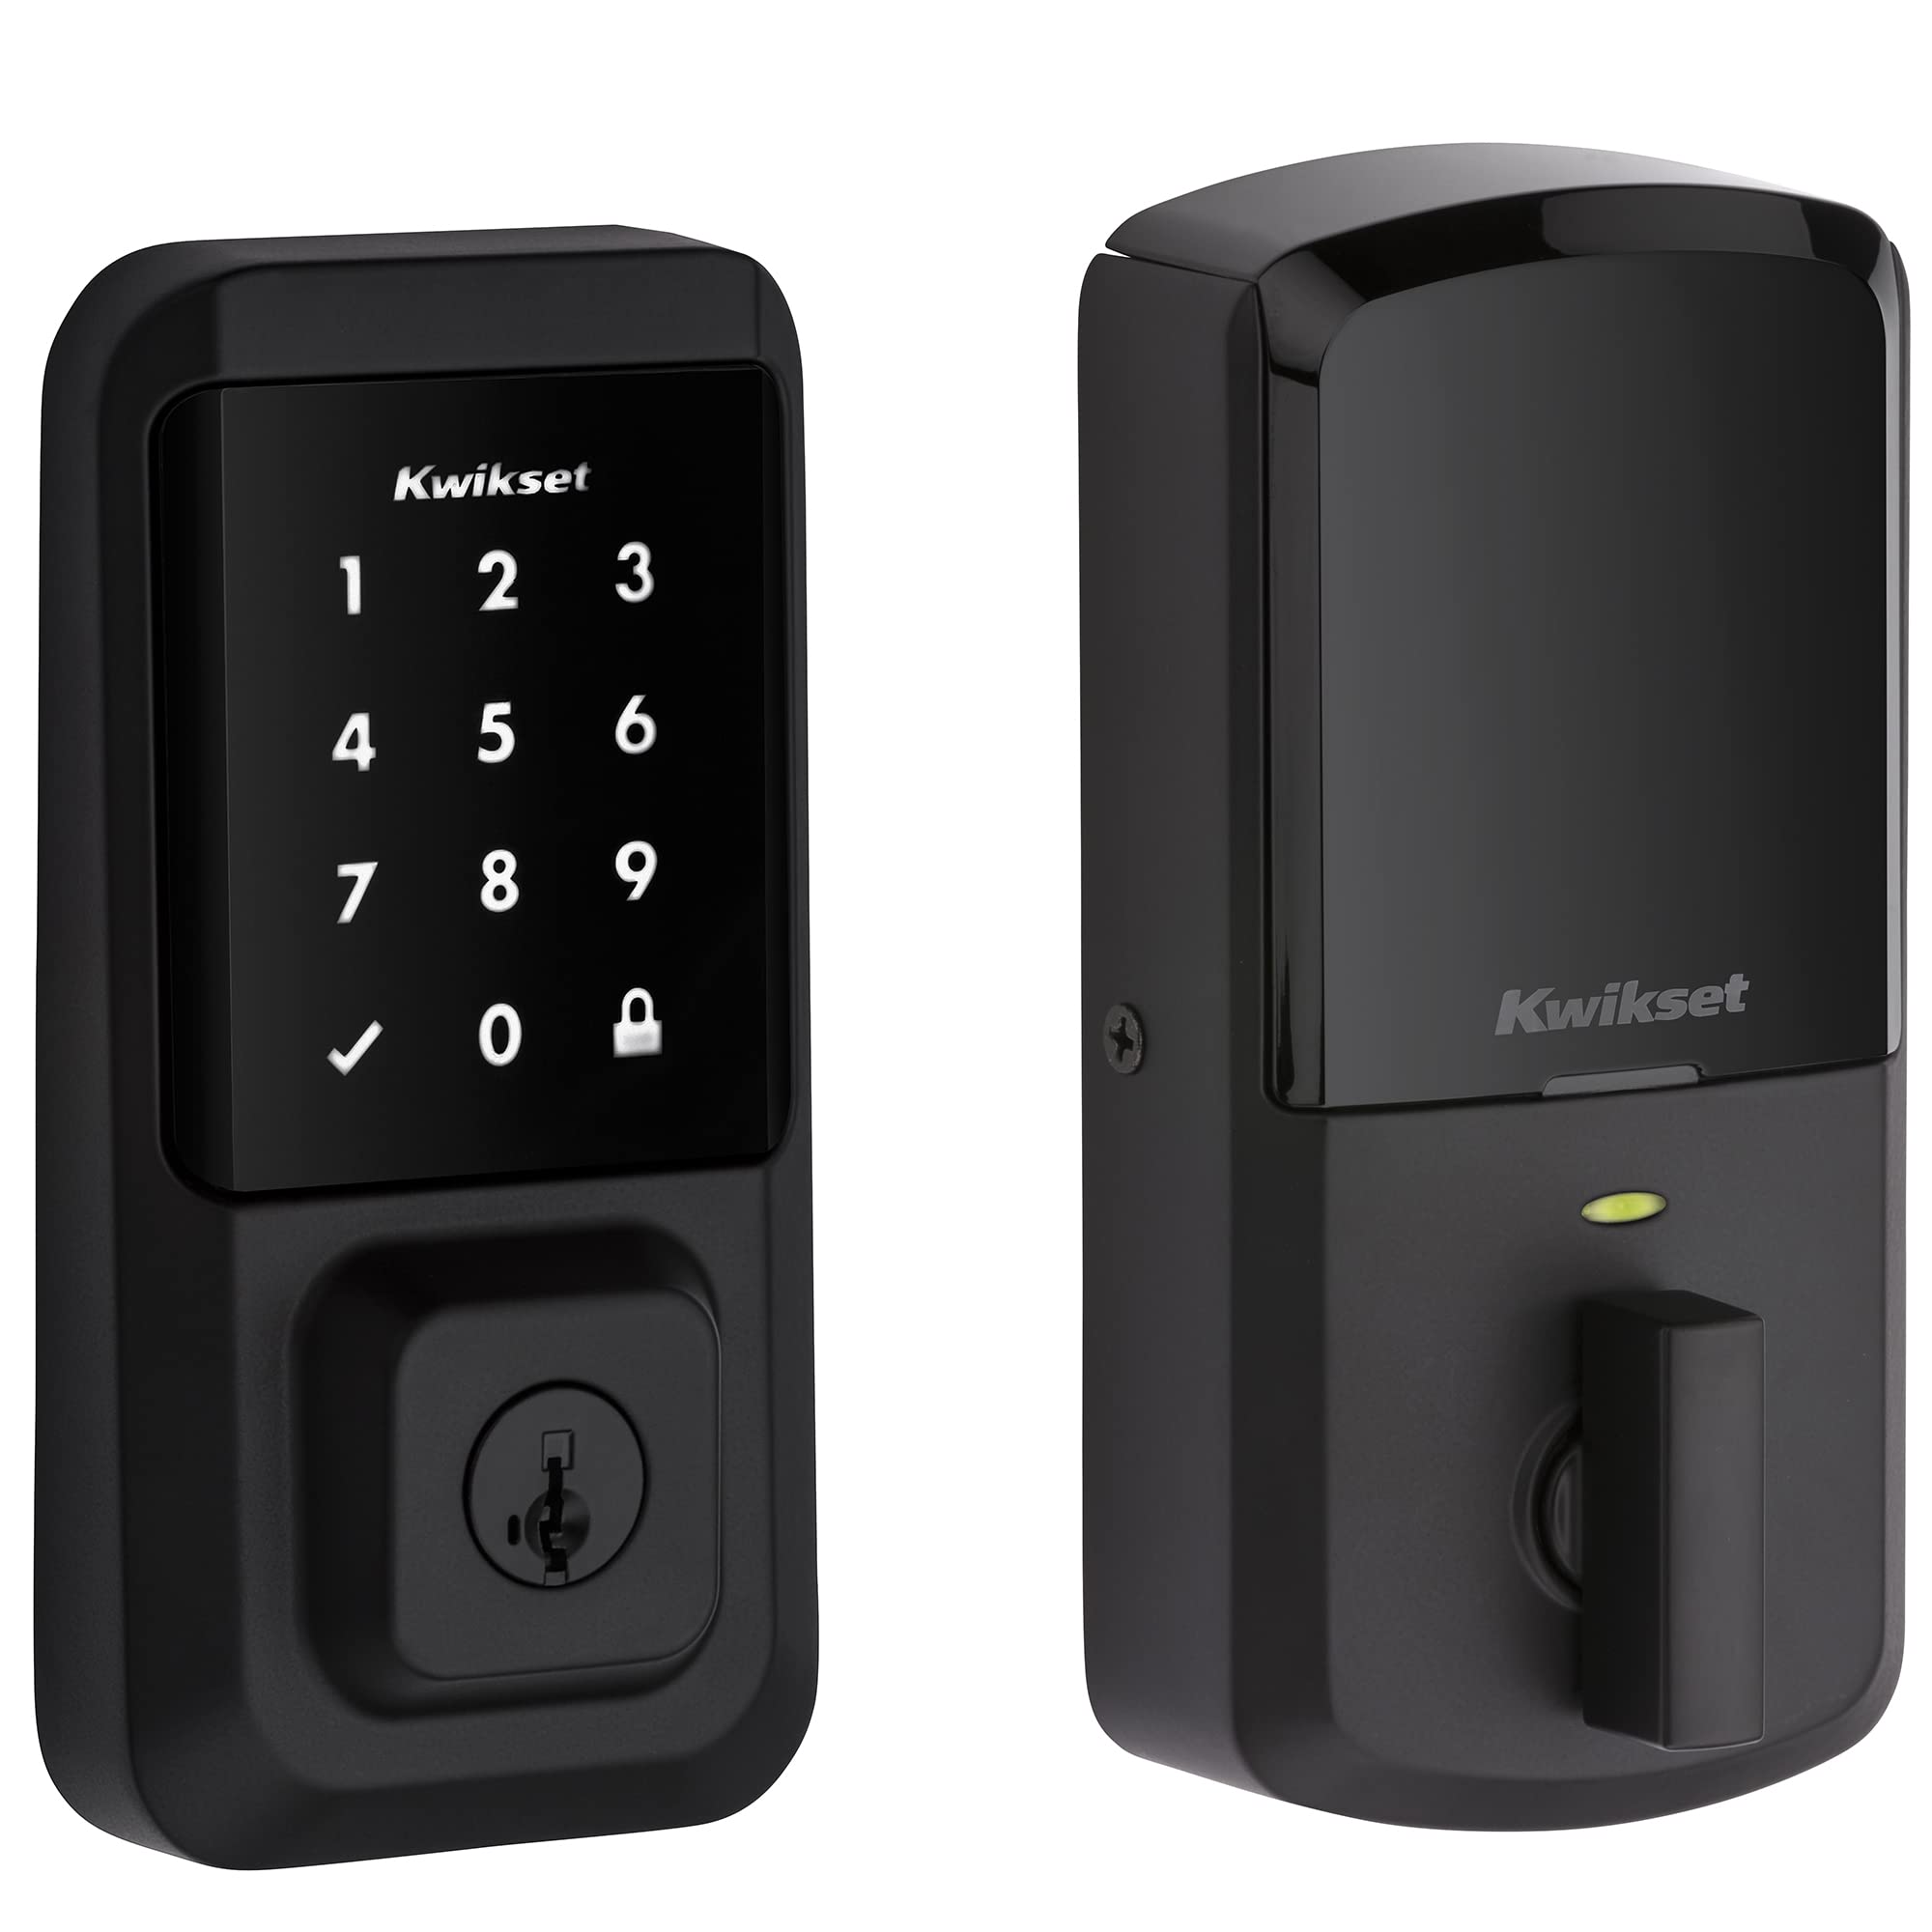 Kwikset 99390-001 Halo Wi-Fi Smart Lock دخول بدون مفتاح...